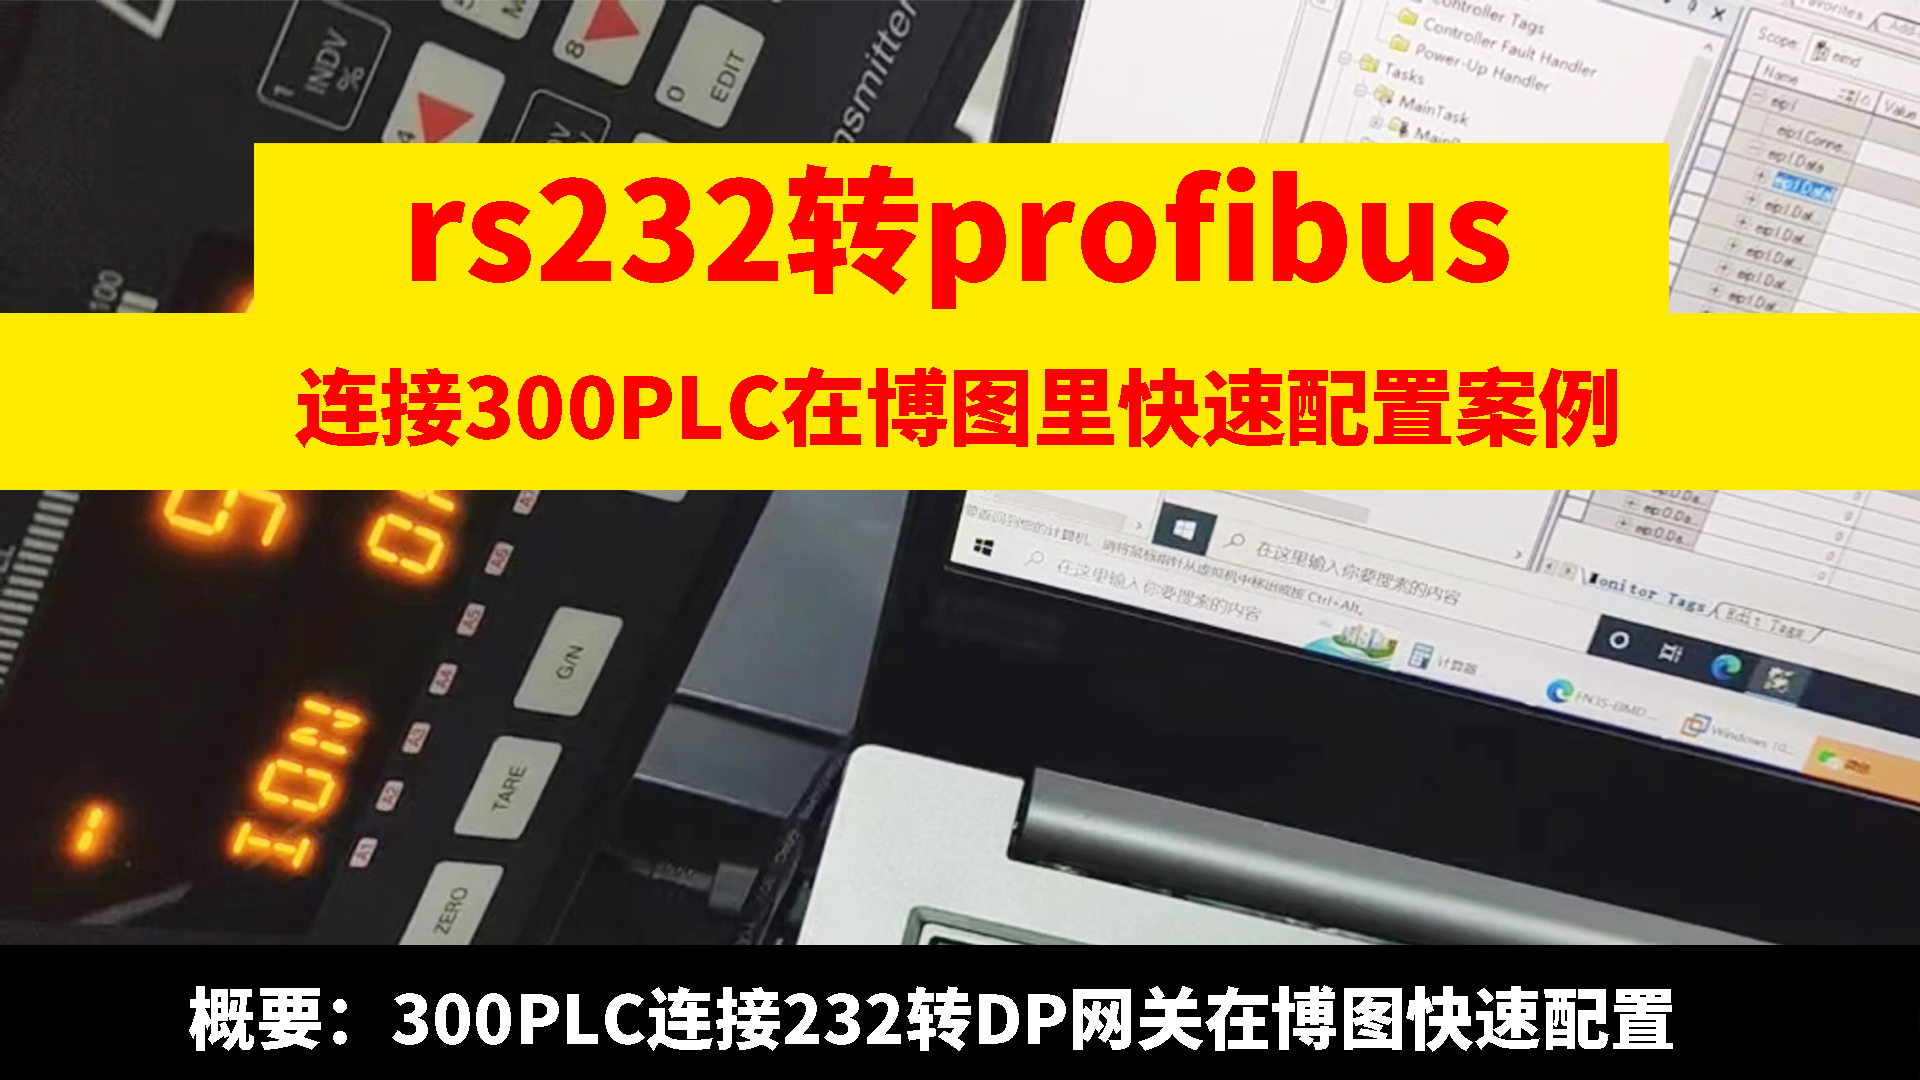 兴达易控RS232转profibus网关连接300PLC在博图快速配置
# rs232转profibus# 